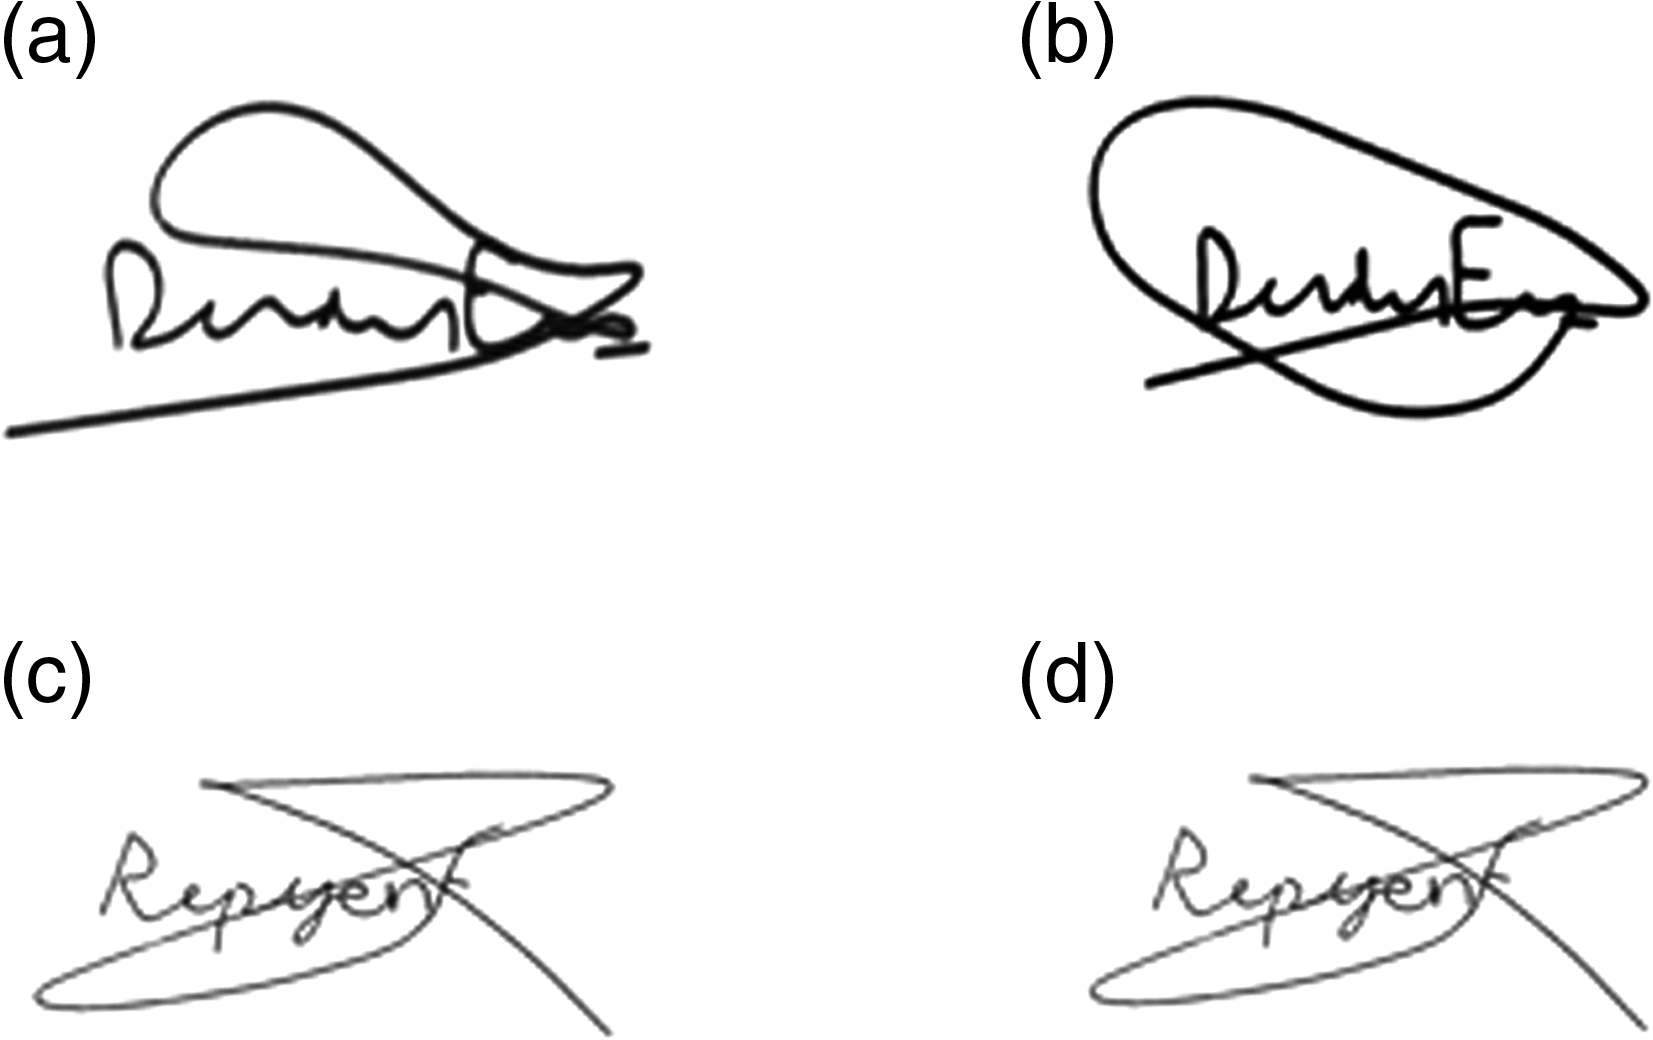 signatures samples c